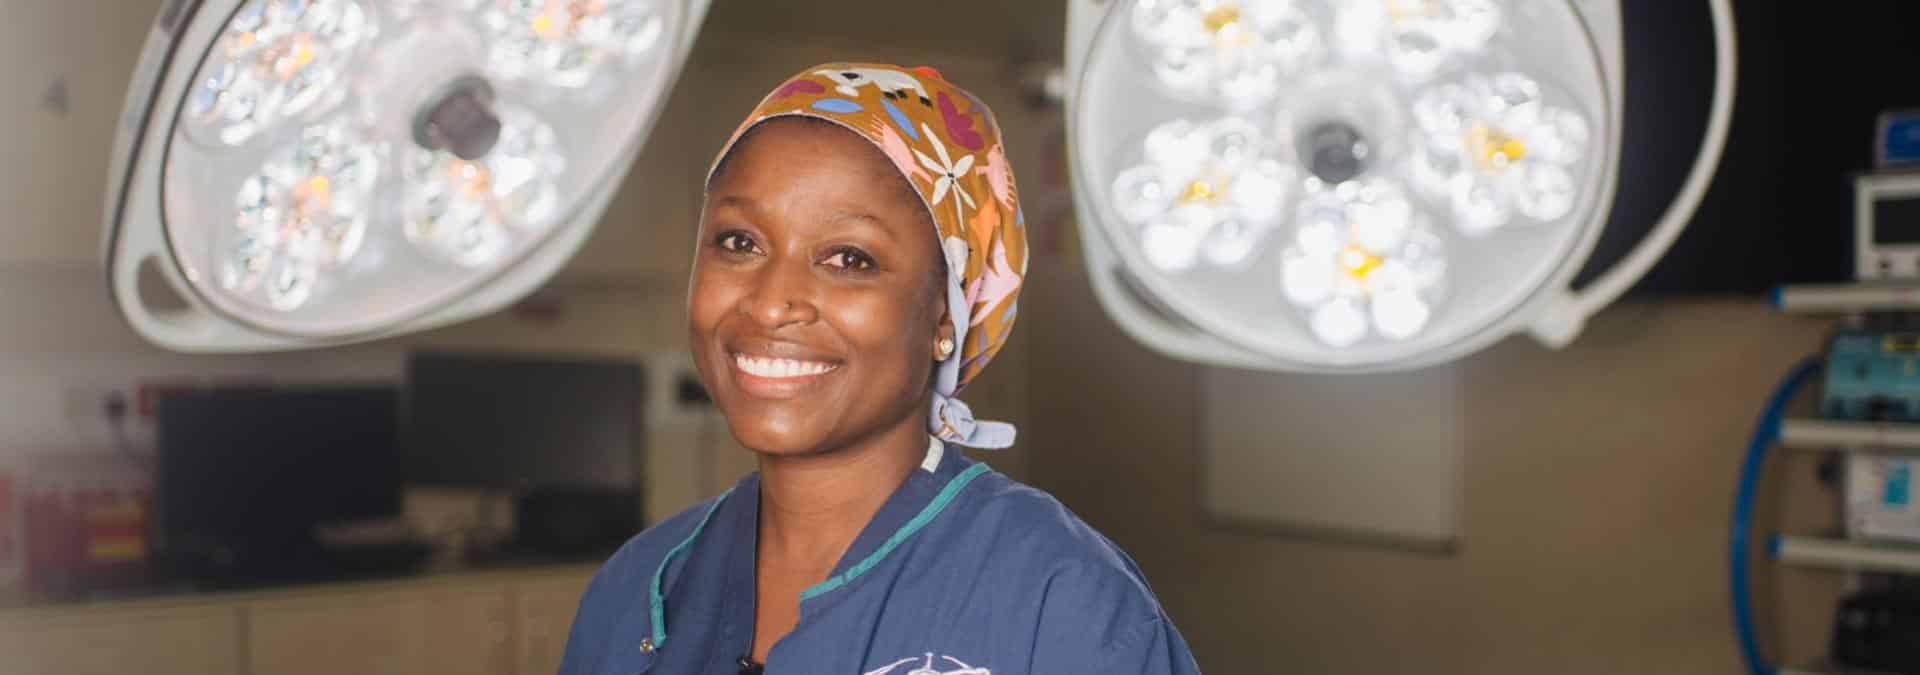 Dr Charlotte, la chirurgienne qui redonne la dignité aux femmes ayant eu une fistule obstétricale